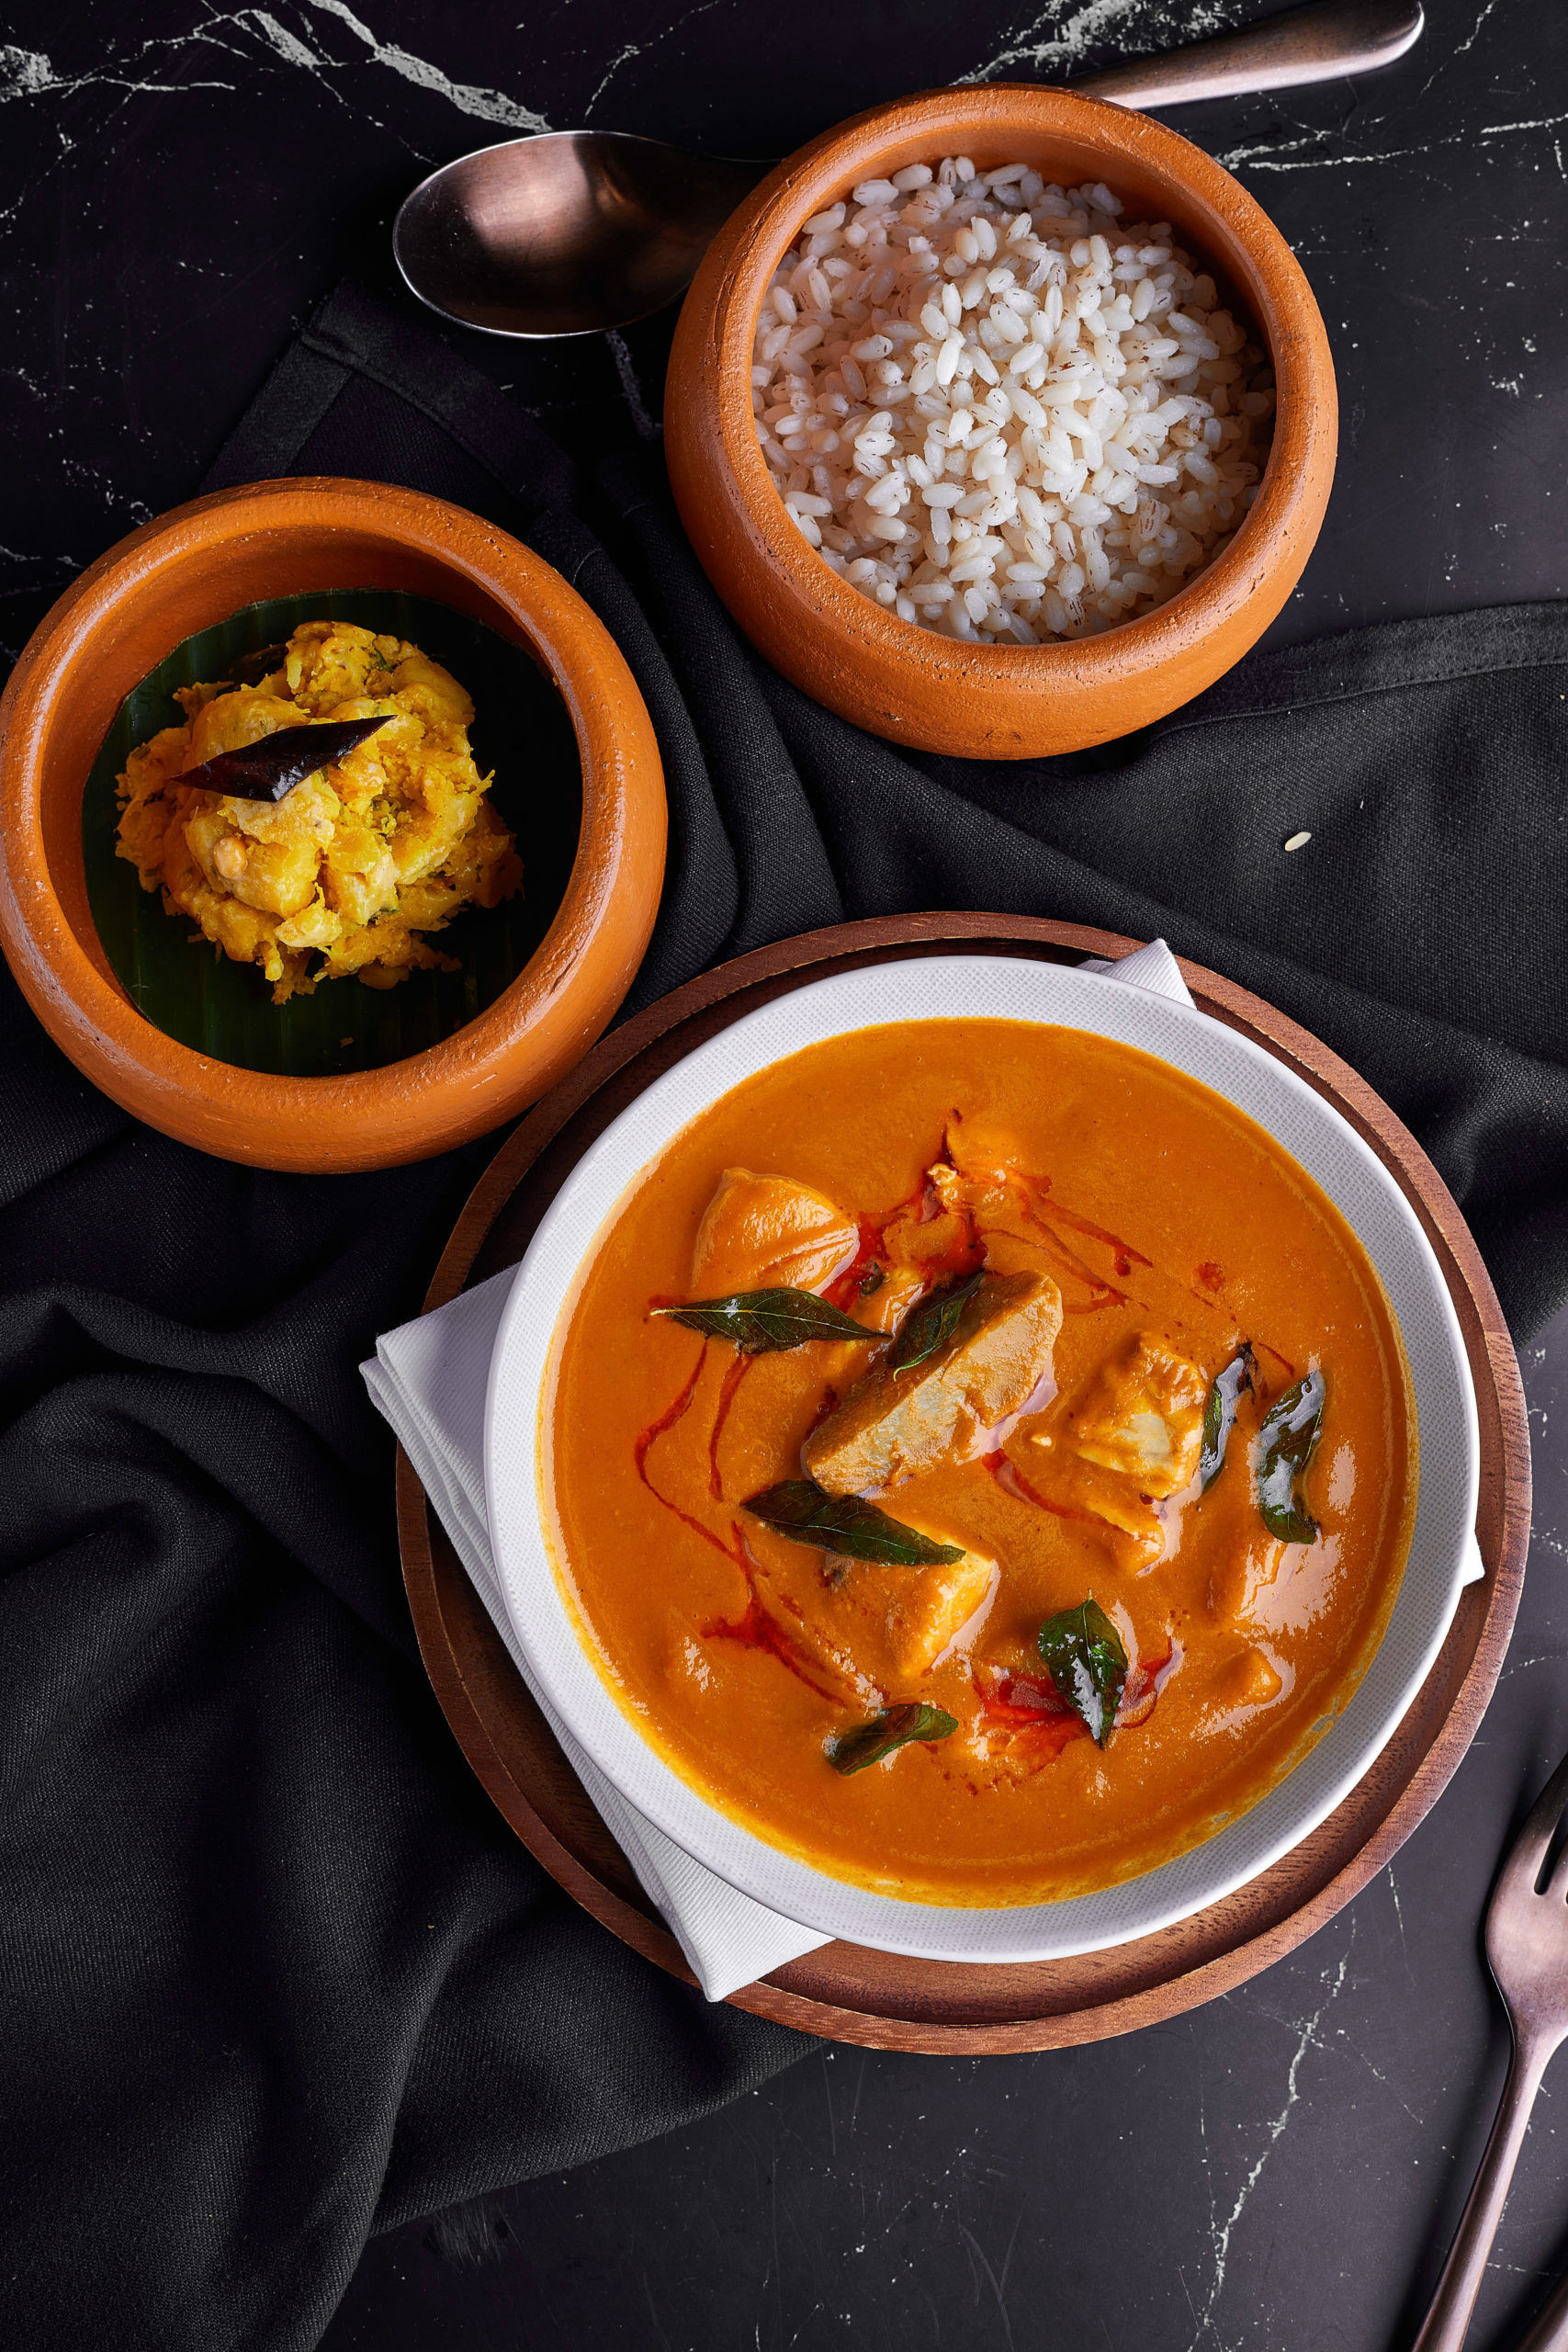 อาหารอินเดีย มิติใหม่ ไม่ธรรมดา! เปิดประสบการณ์ความจัดจ้านไปกับ Jhol Coastal Indian Cuisine 